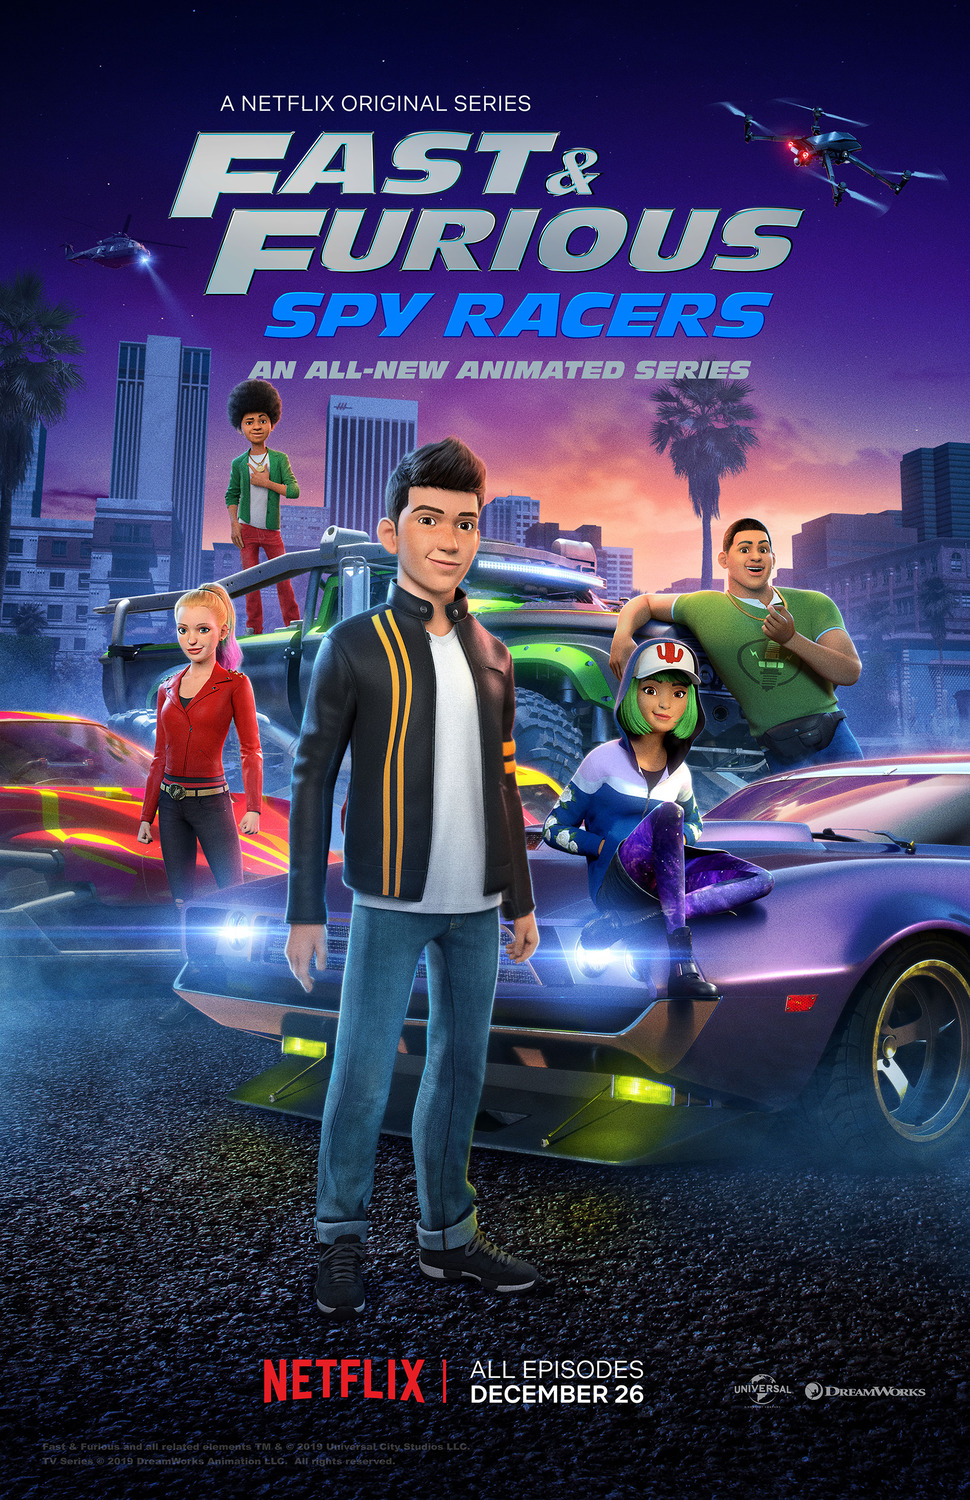 ดูหนังออนไลน์ฟรี Fast & Furious Spy Racers (2019) Season1 EP7 เร็ว…แรง ทะลุนรก ซิ่งสยบโลก ตอนที่ 7 (พากย์ไทย)